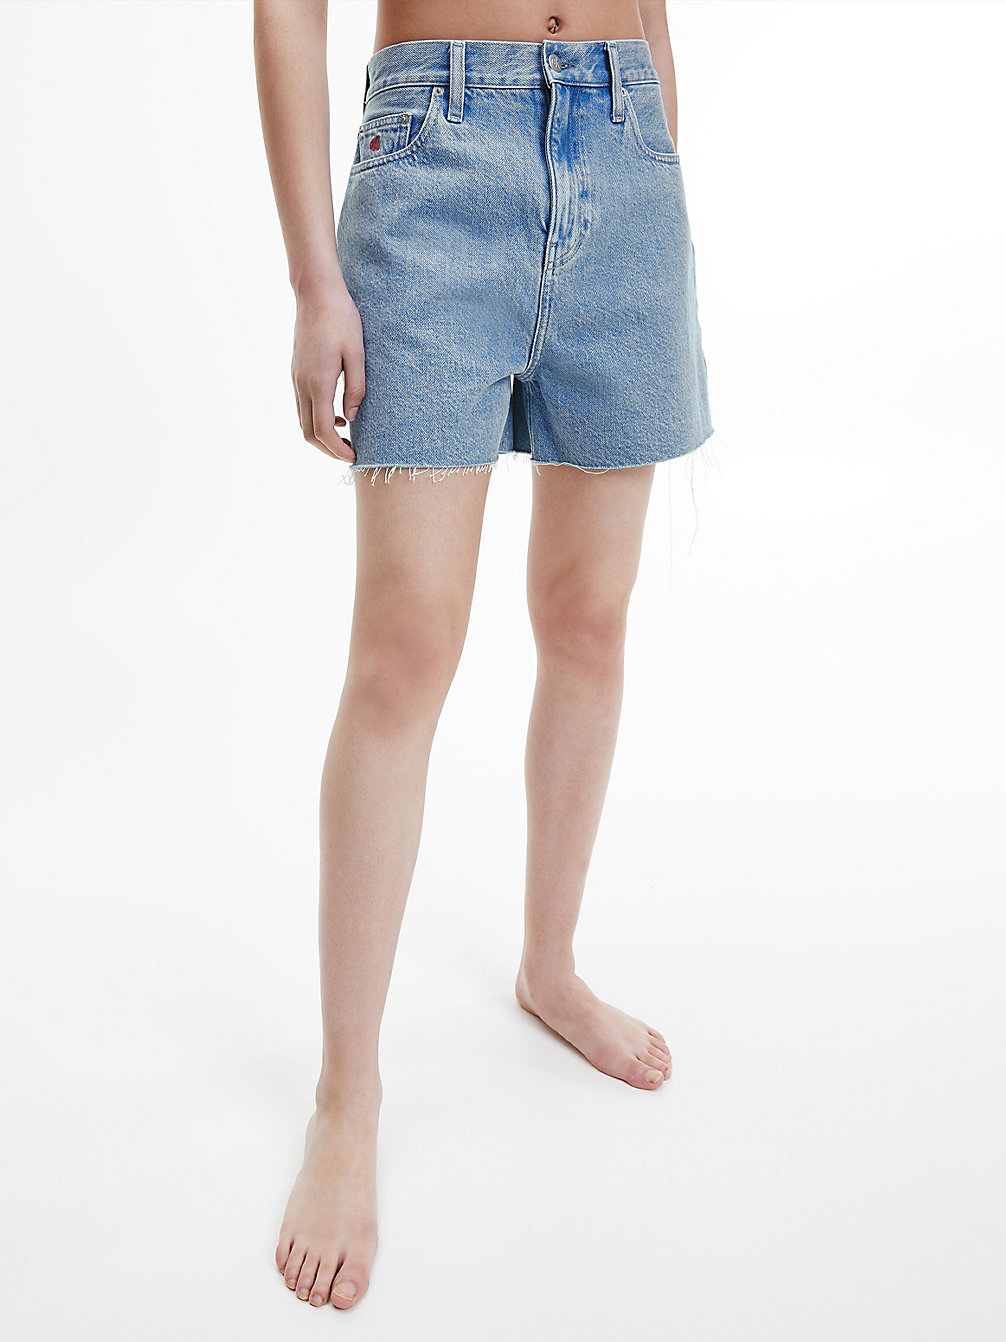 DENIM MEDIUM > Свободные джинсовые шорты высокой посадки - CK One > undefined Женщины - Calvin Klein